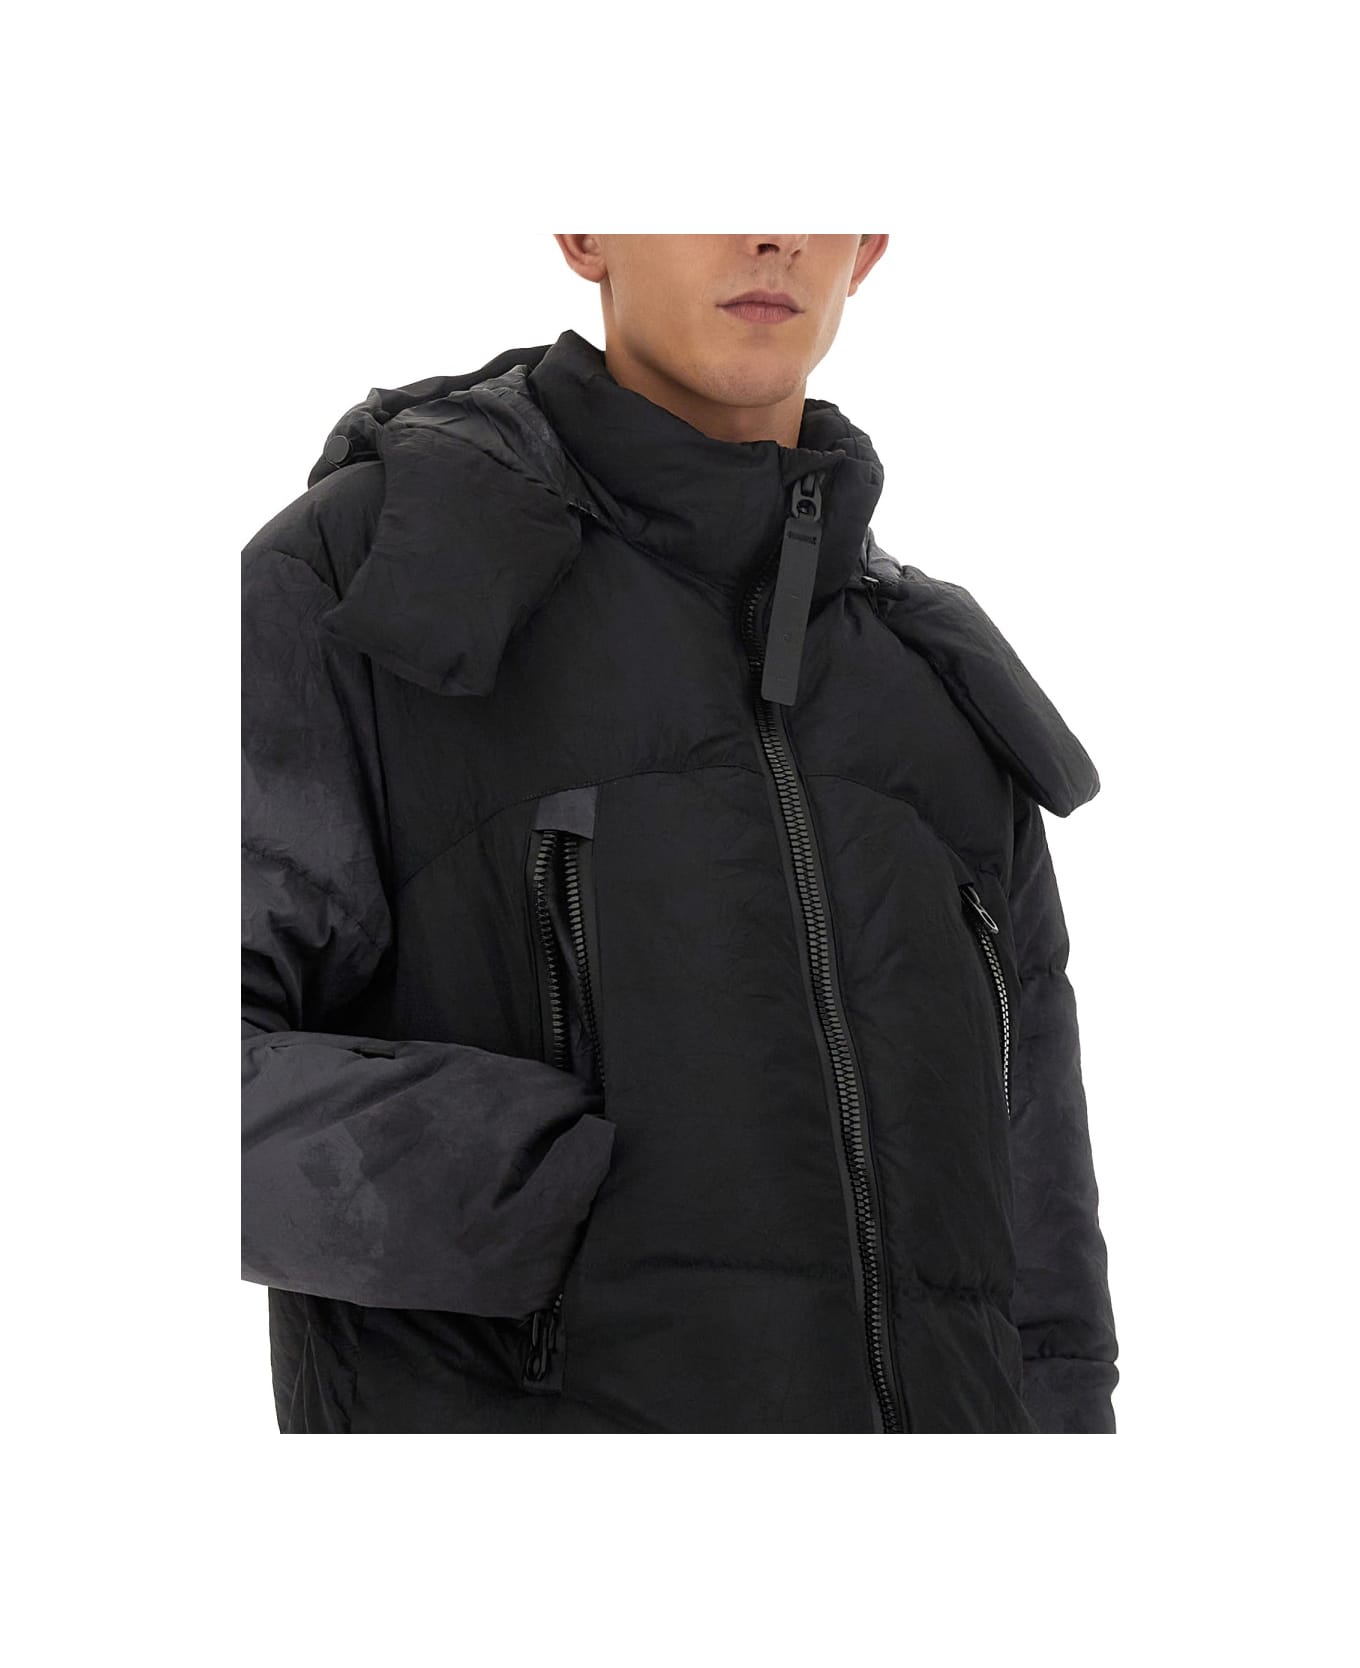 JG1 Jacket With Zip - BLACK